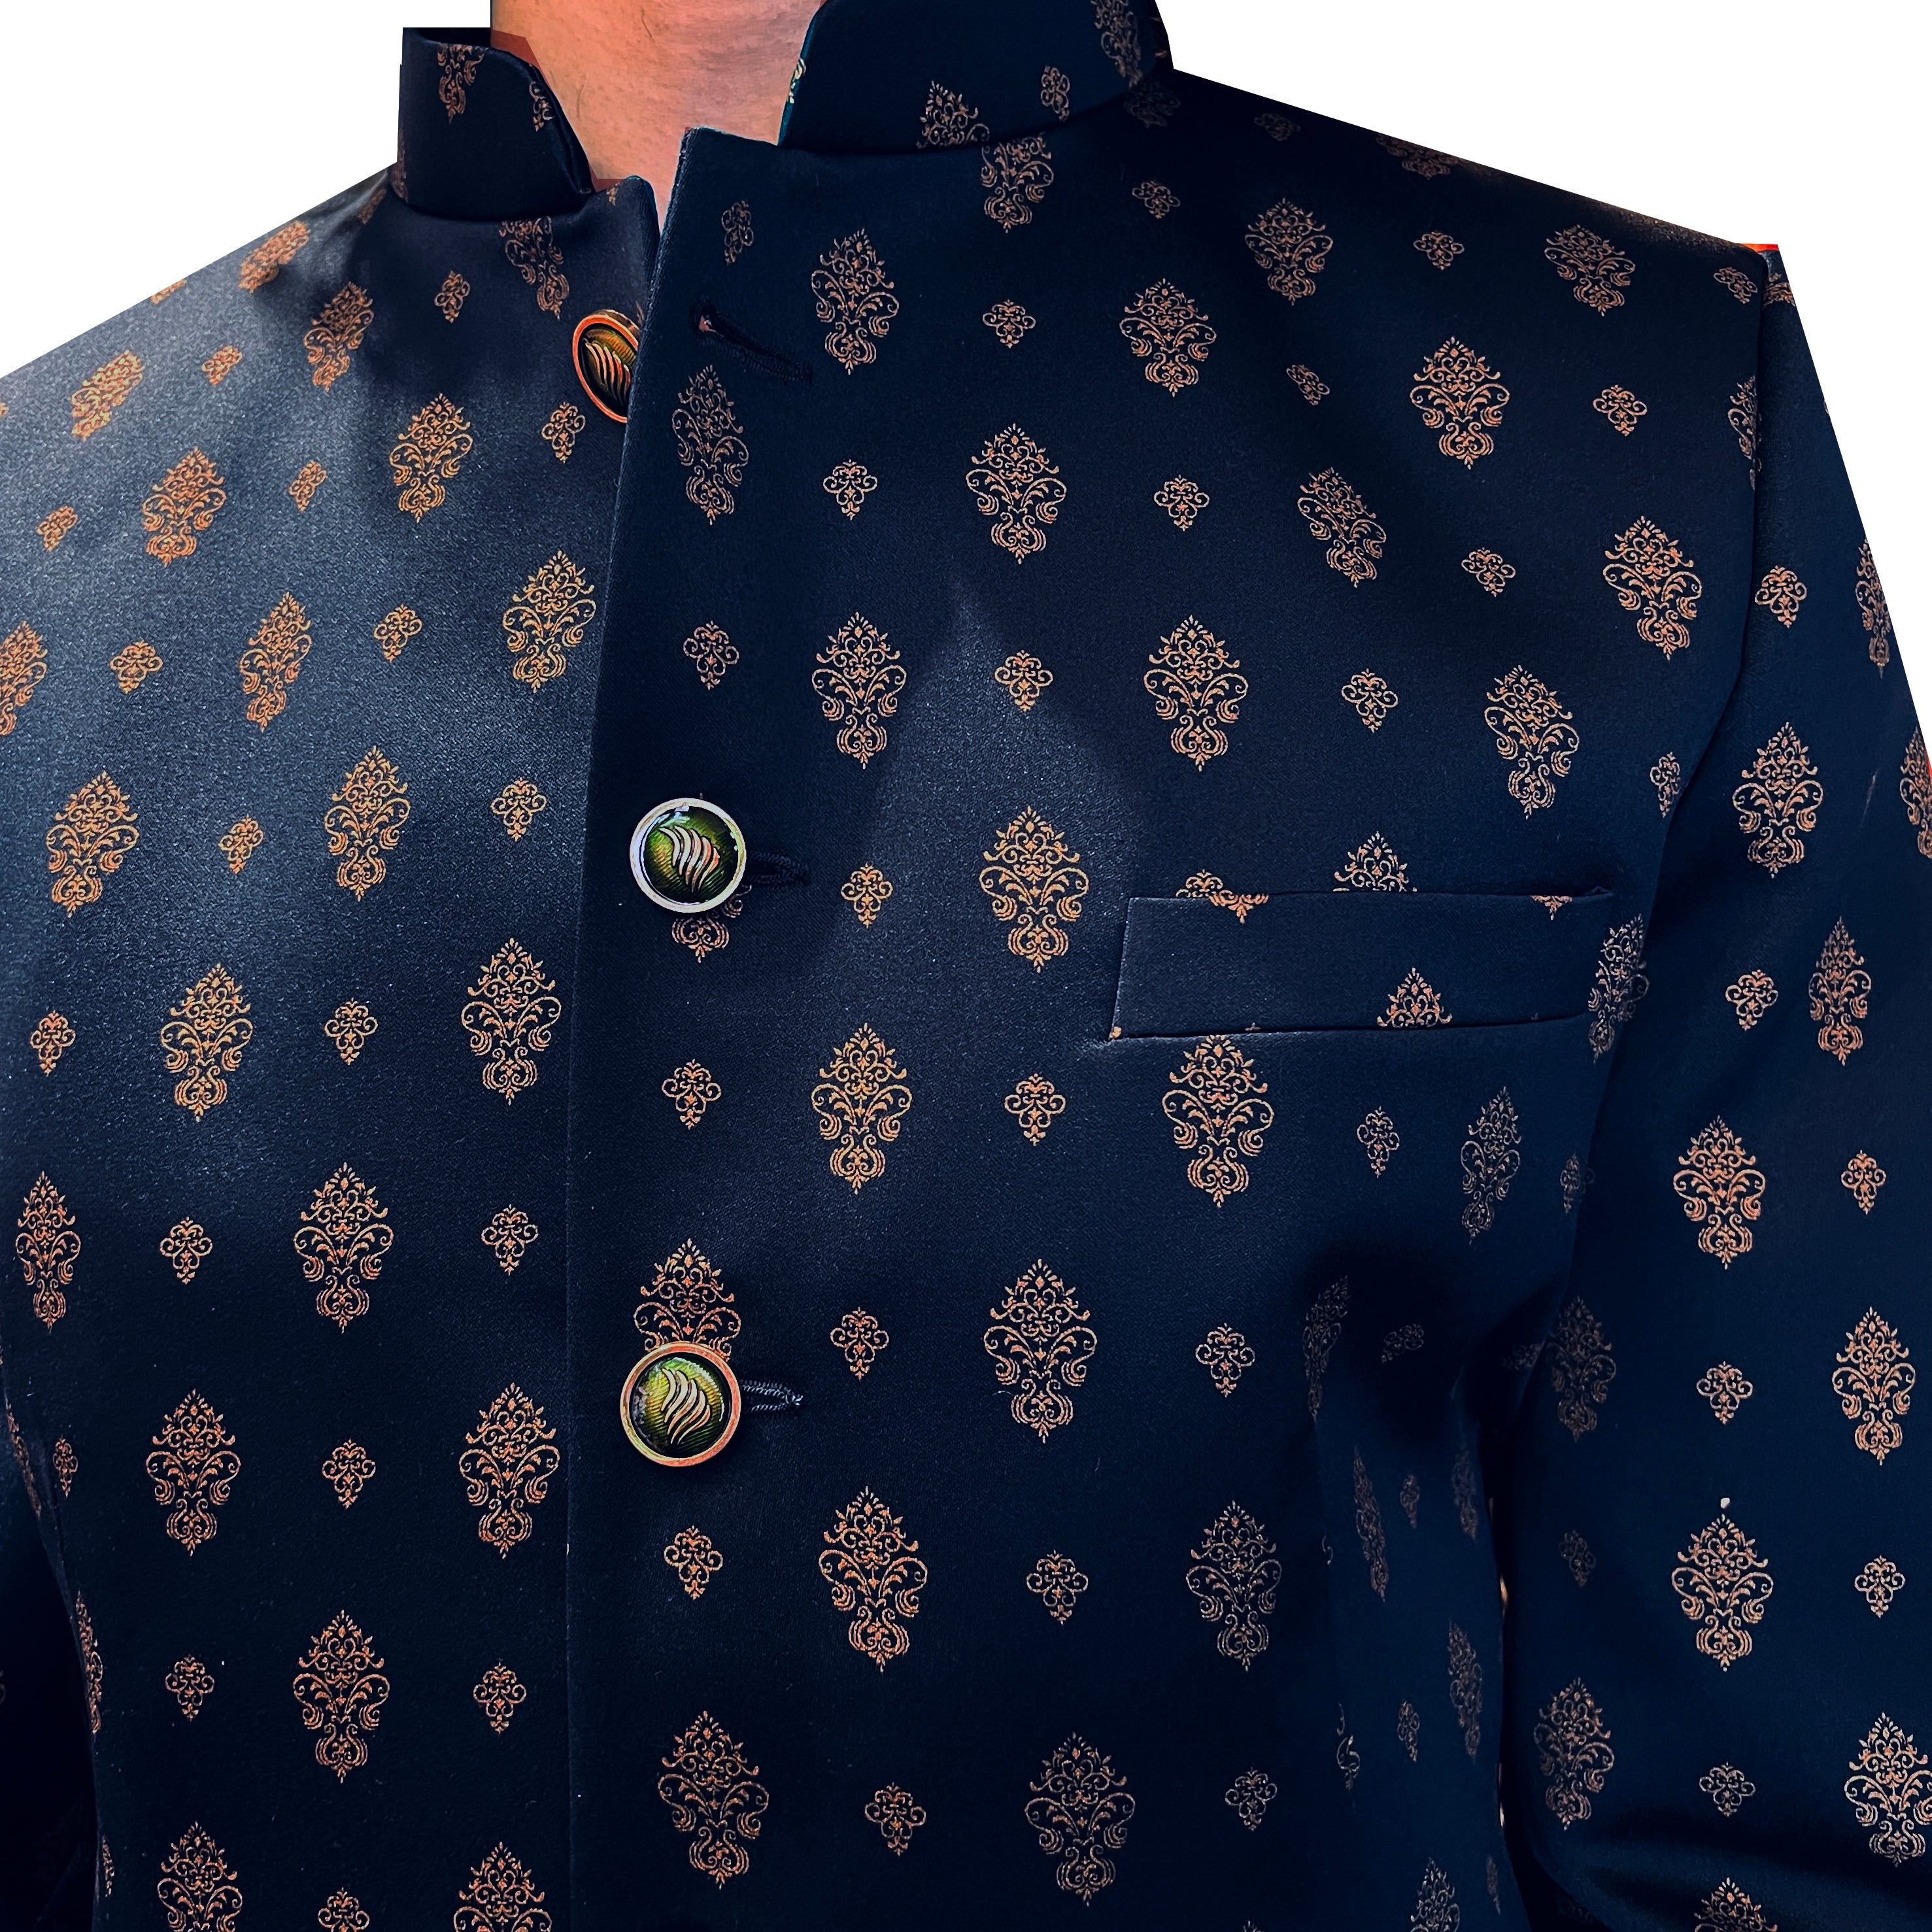 Brocade Jodhpuri Jacket-2 Colors - Vintage India NYC